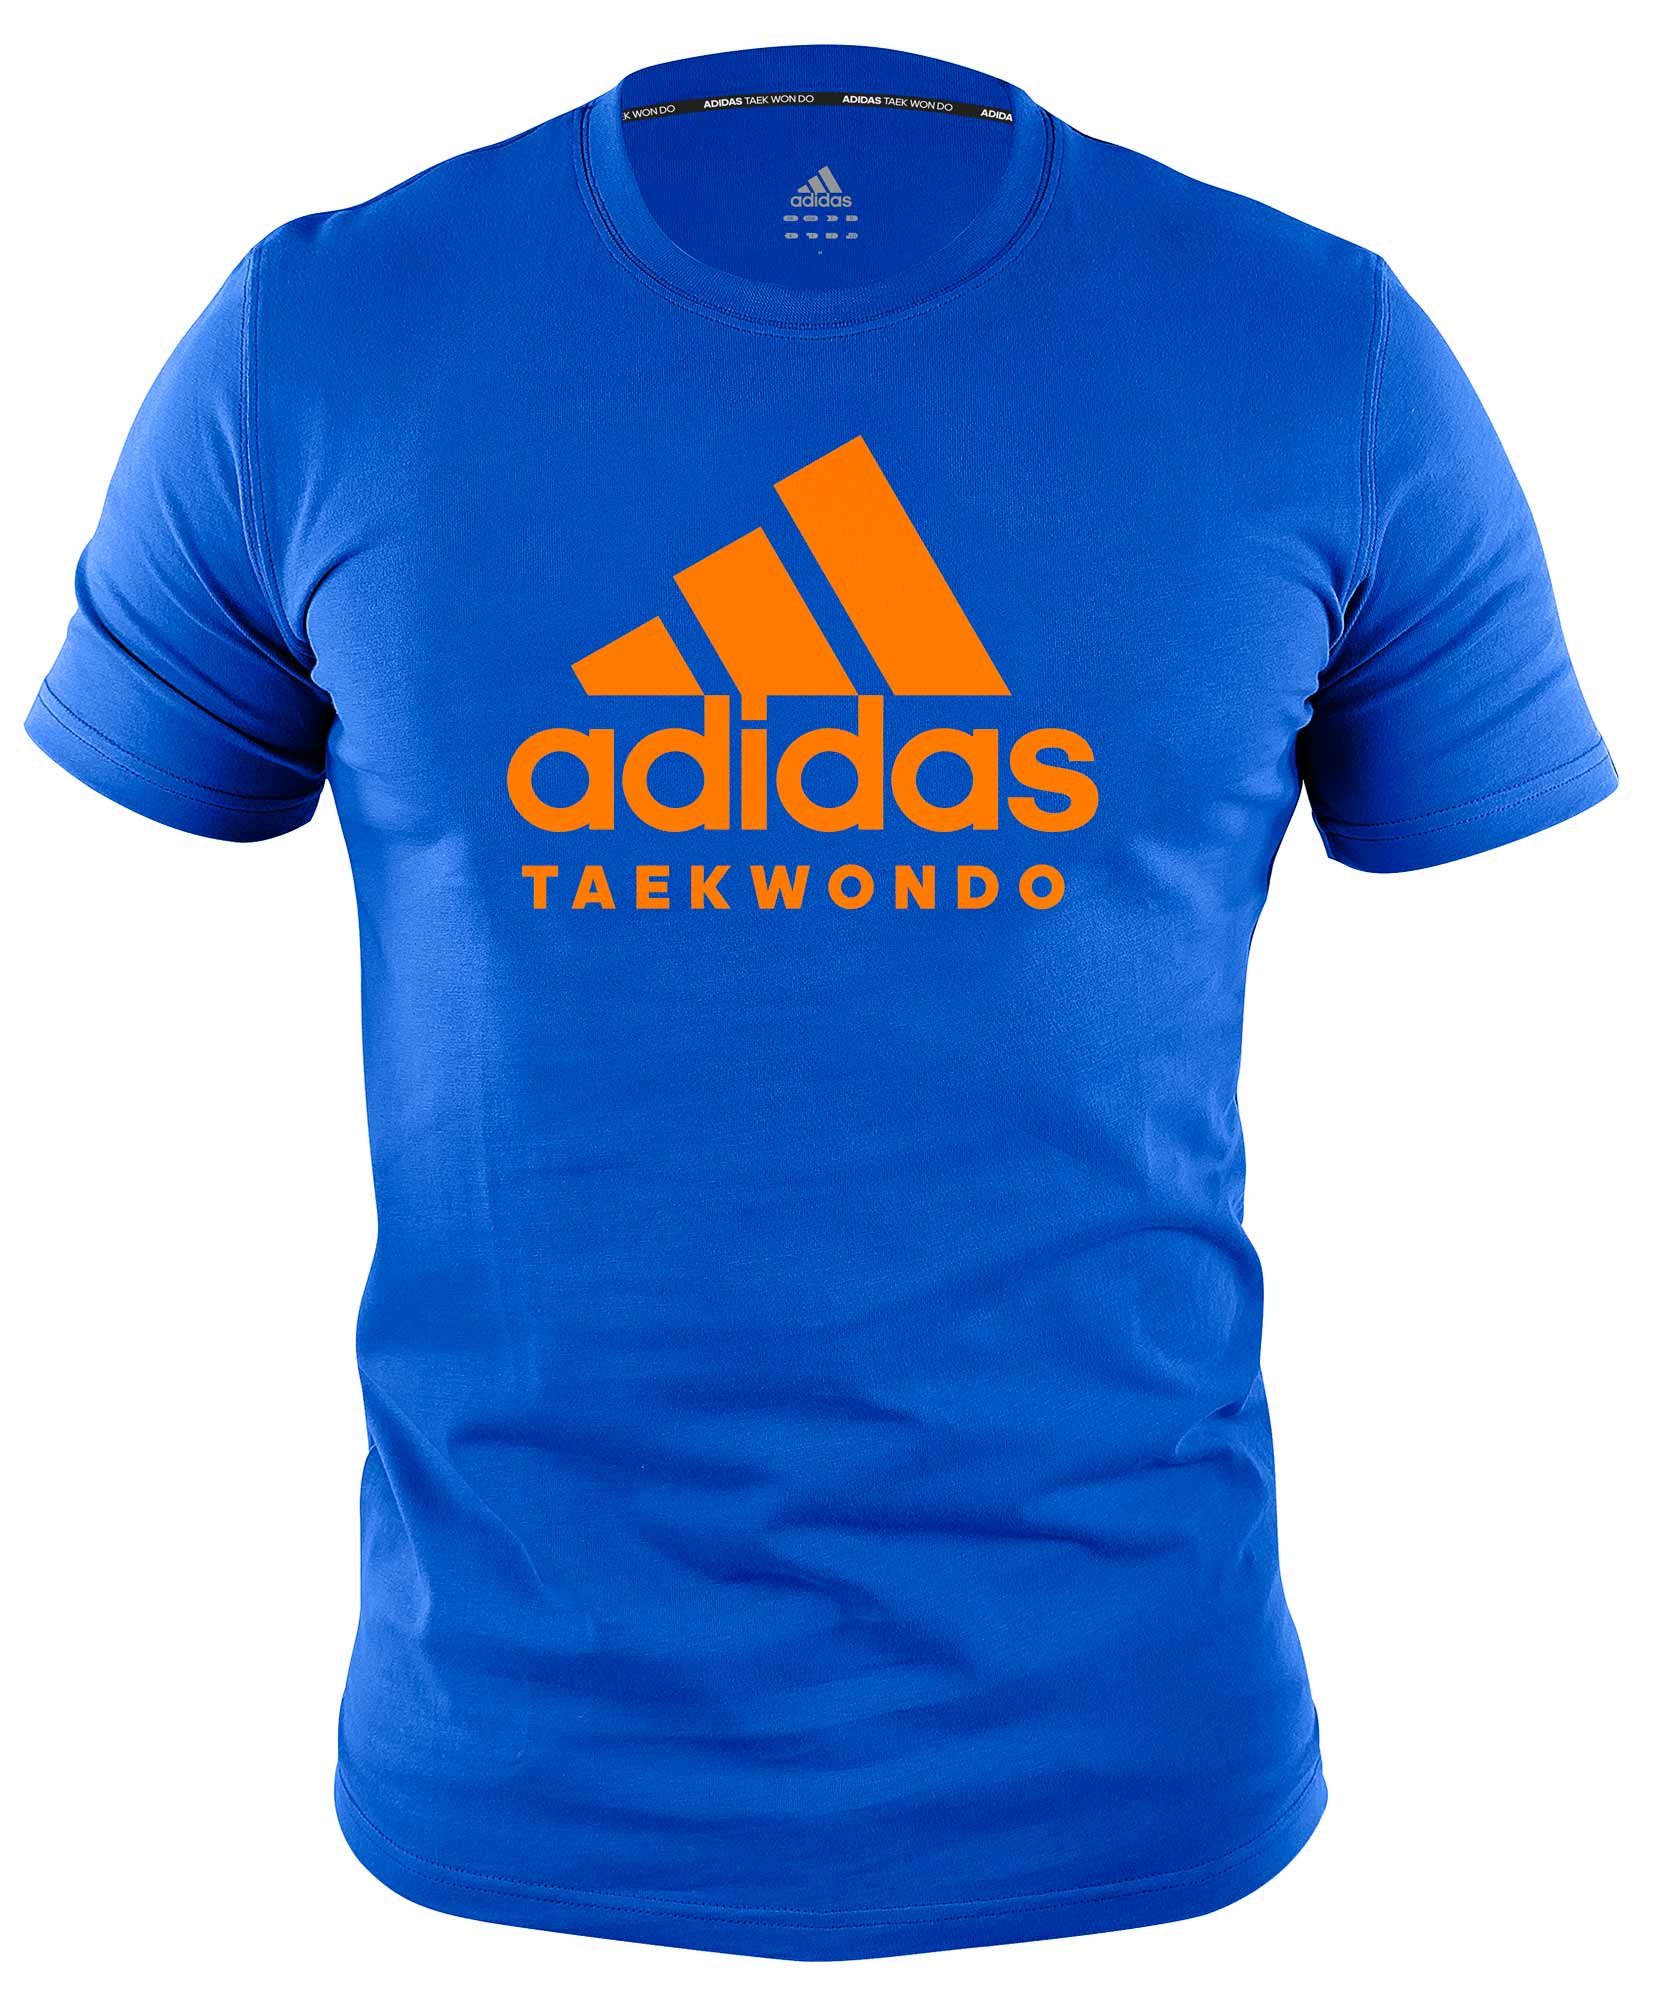 adidas Community line T-Shirt Taekwondo "Performance" blue/orange, ADICTTKD